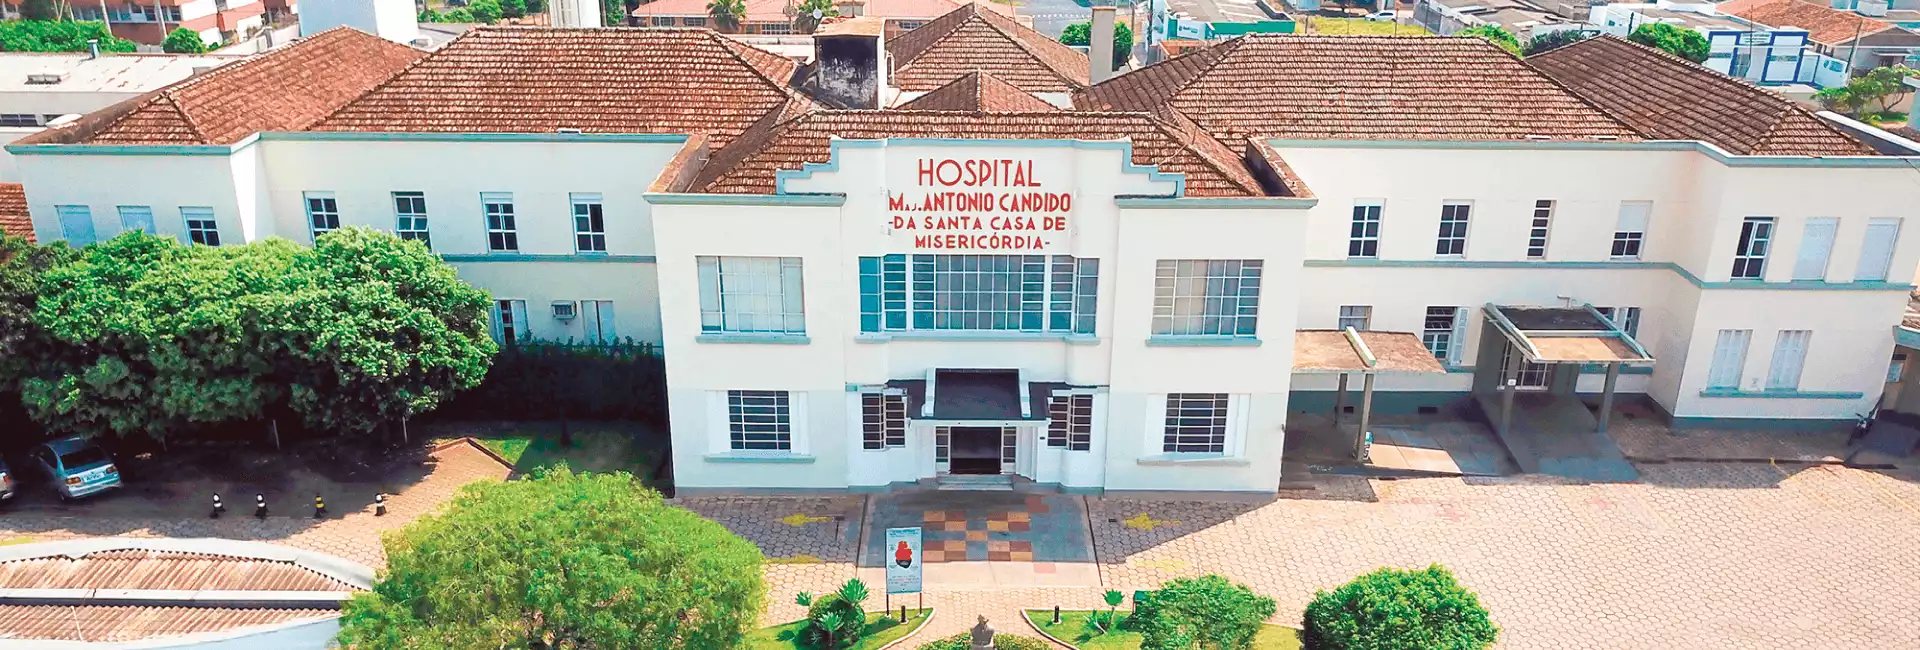 Velório Hospital Major Antonio Candido da Santa Casa de Misericórdia de Batatais